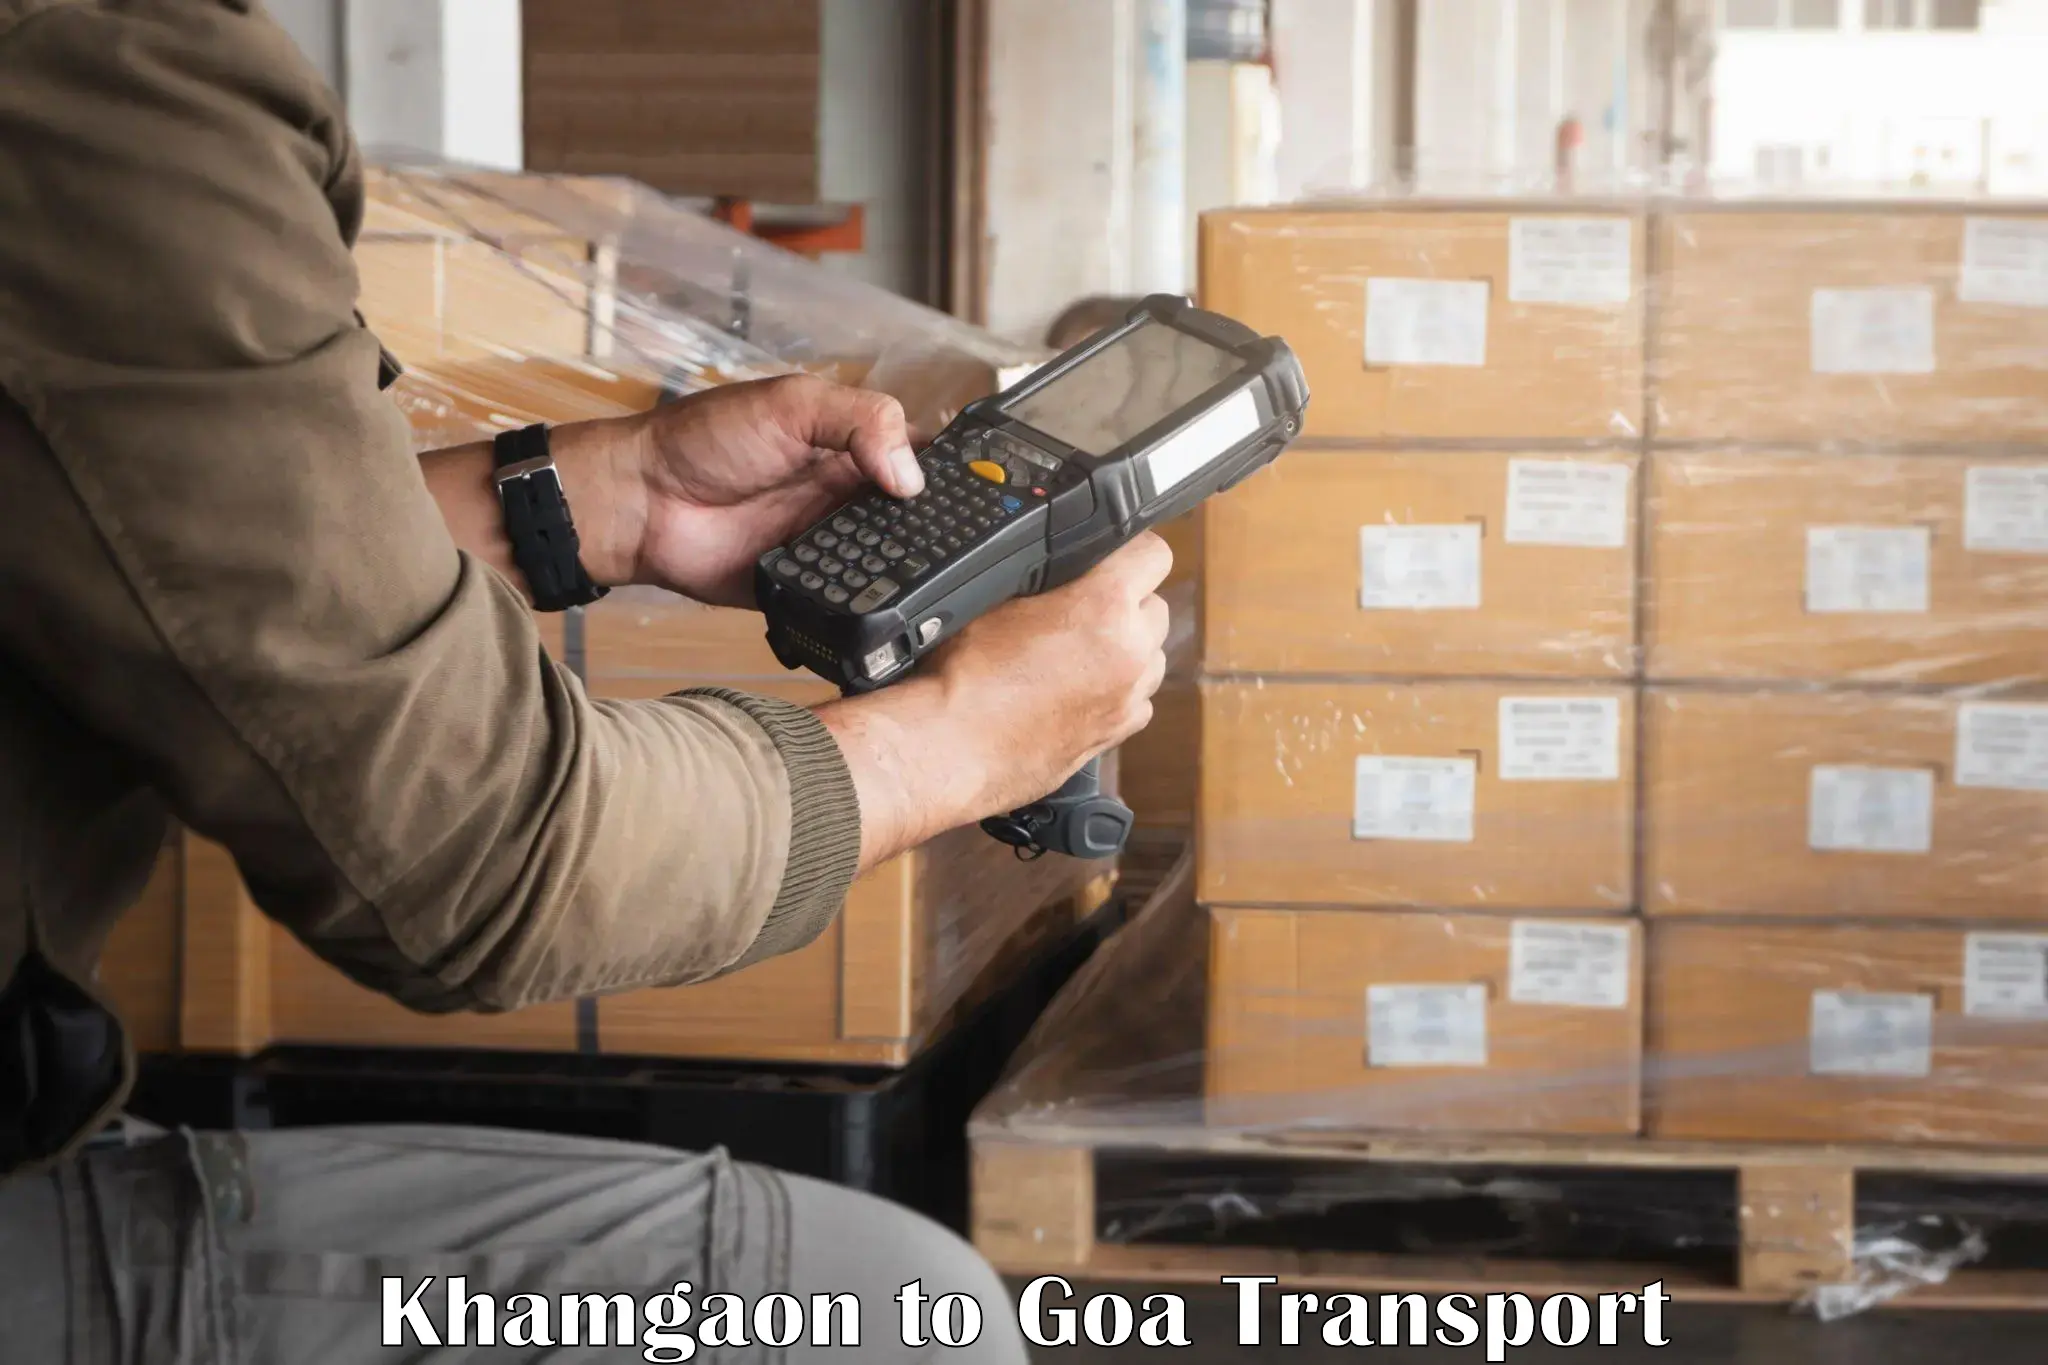 International cargo transportation services Khamgaon to Bardez